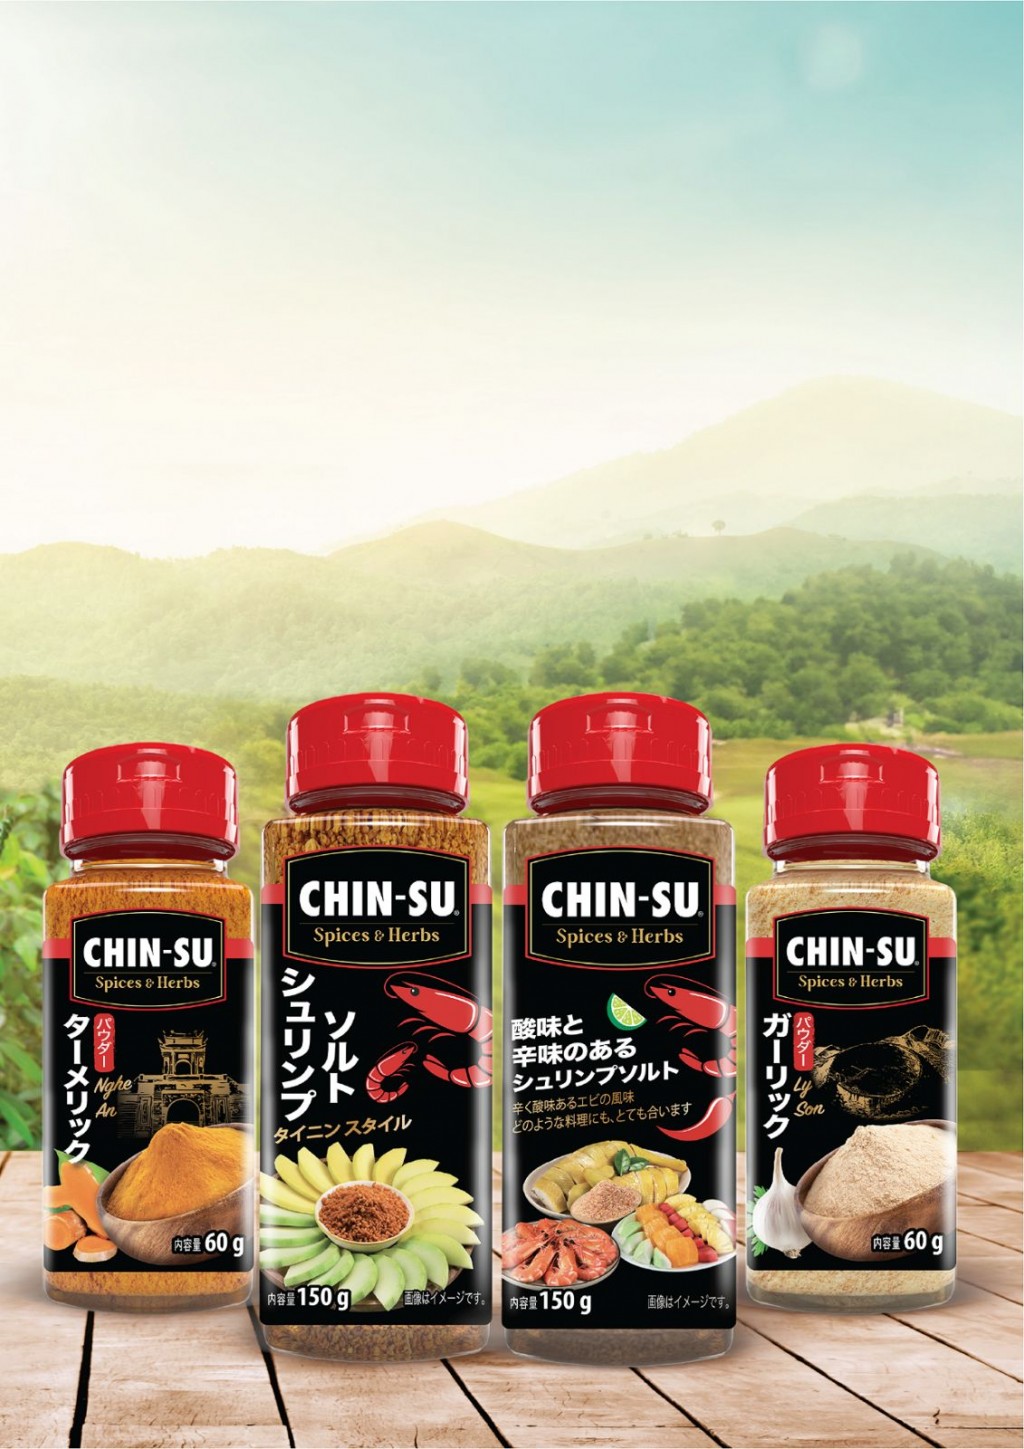 3. Bộ gia vị bột & hạt đặc sản CHIN-SU lần đầu tiên có mặt tại Foodexjpg